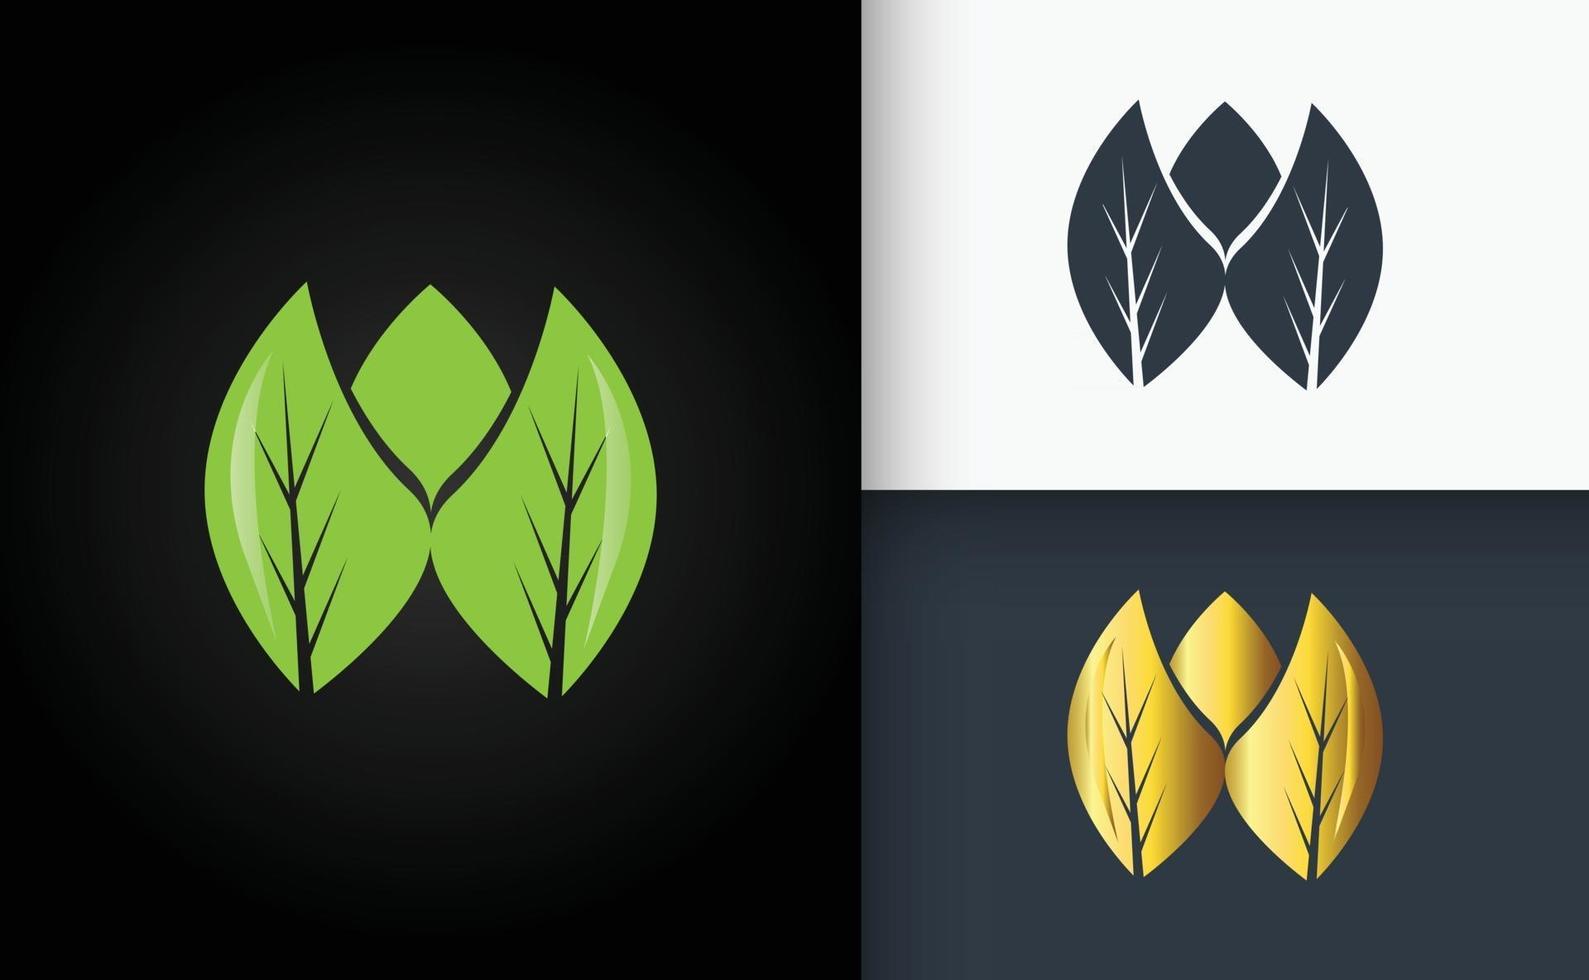 Natural Logo Design Green Golden And Black Leaf vector